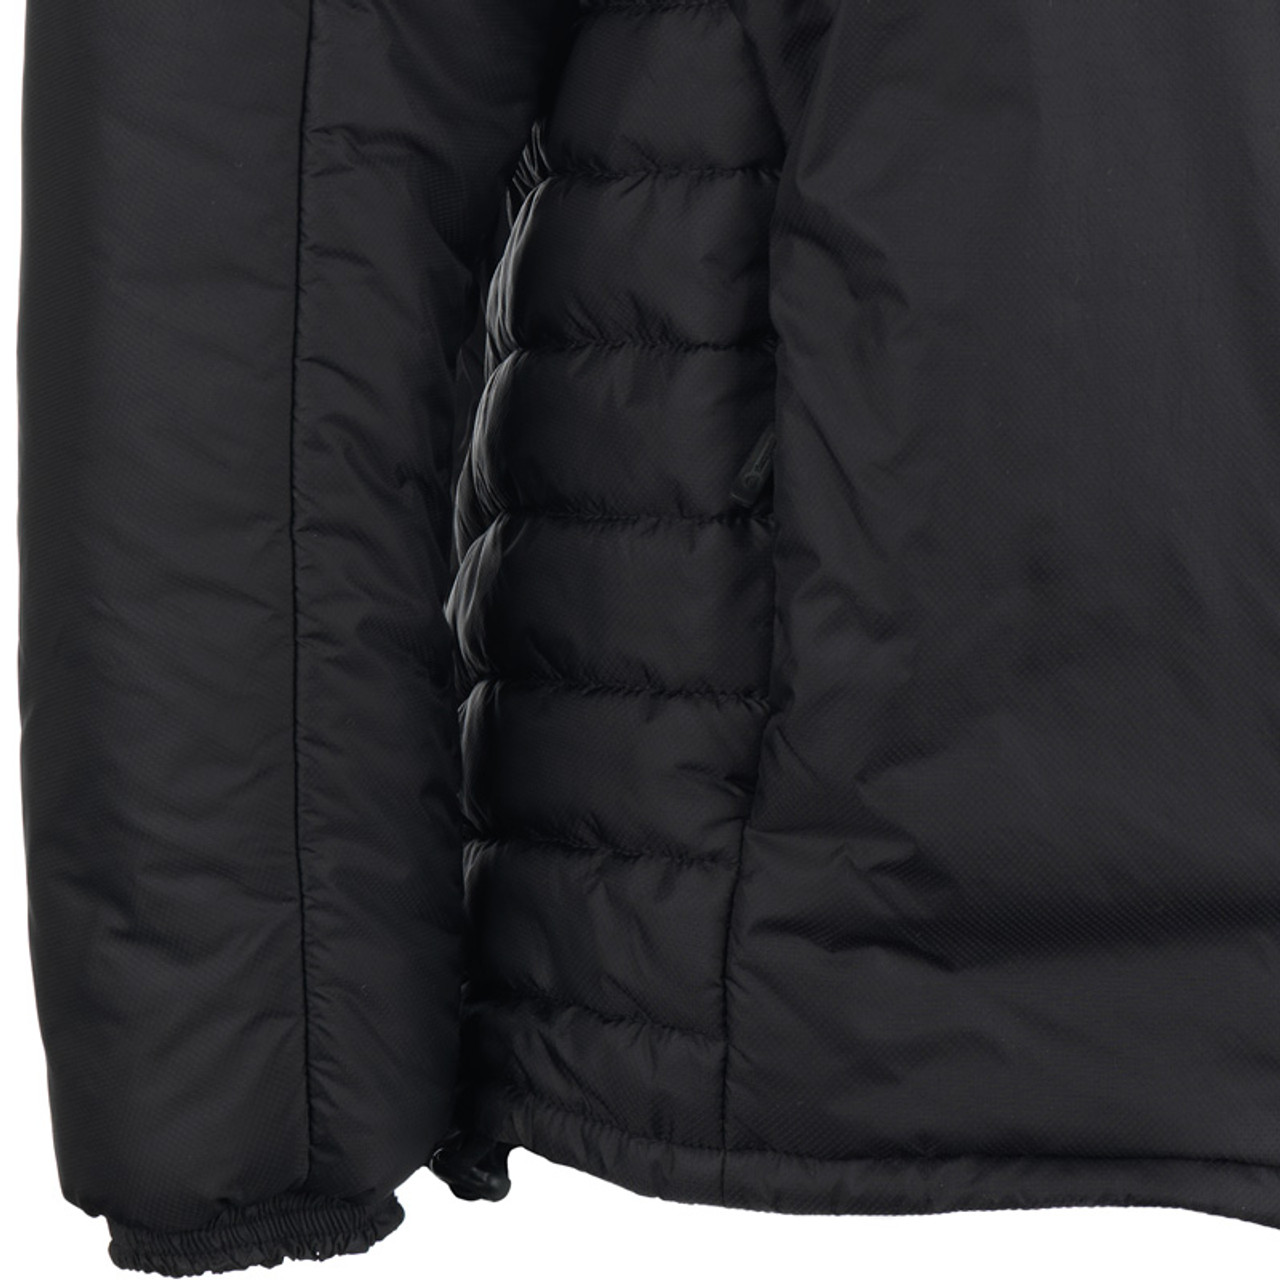 Snugpak Softie SJ-6 Softie Jacket Made in the UK